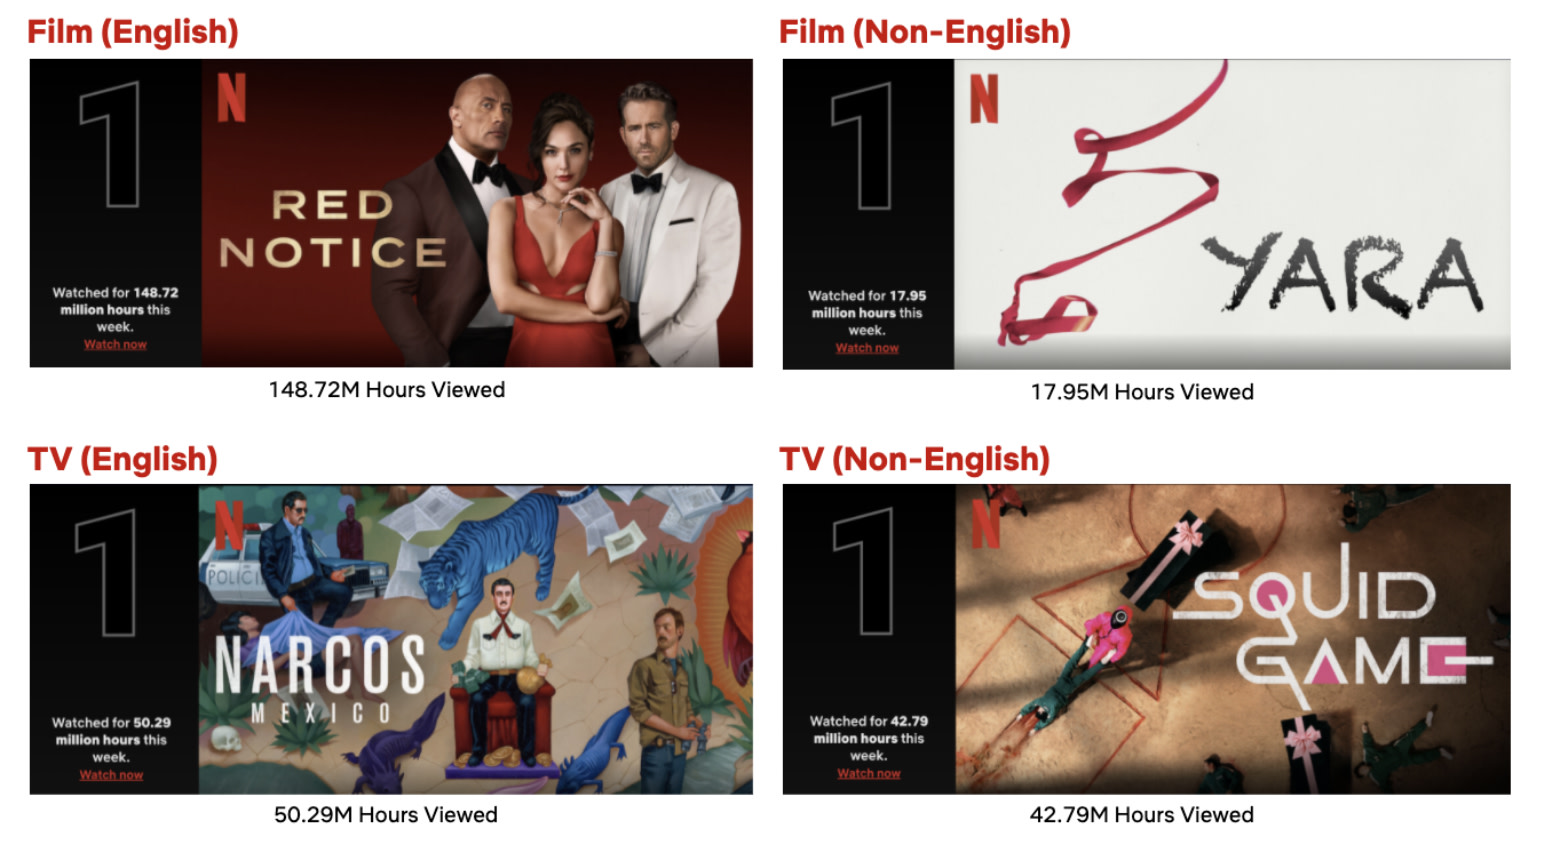 Conheça os dois filmes brasileiros que lideram o Top 10 (Non-English) da  Netflix